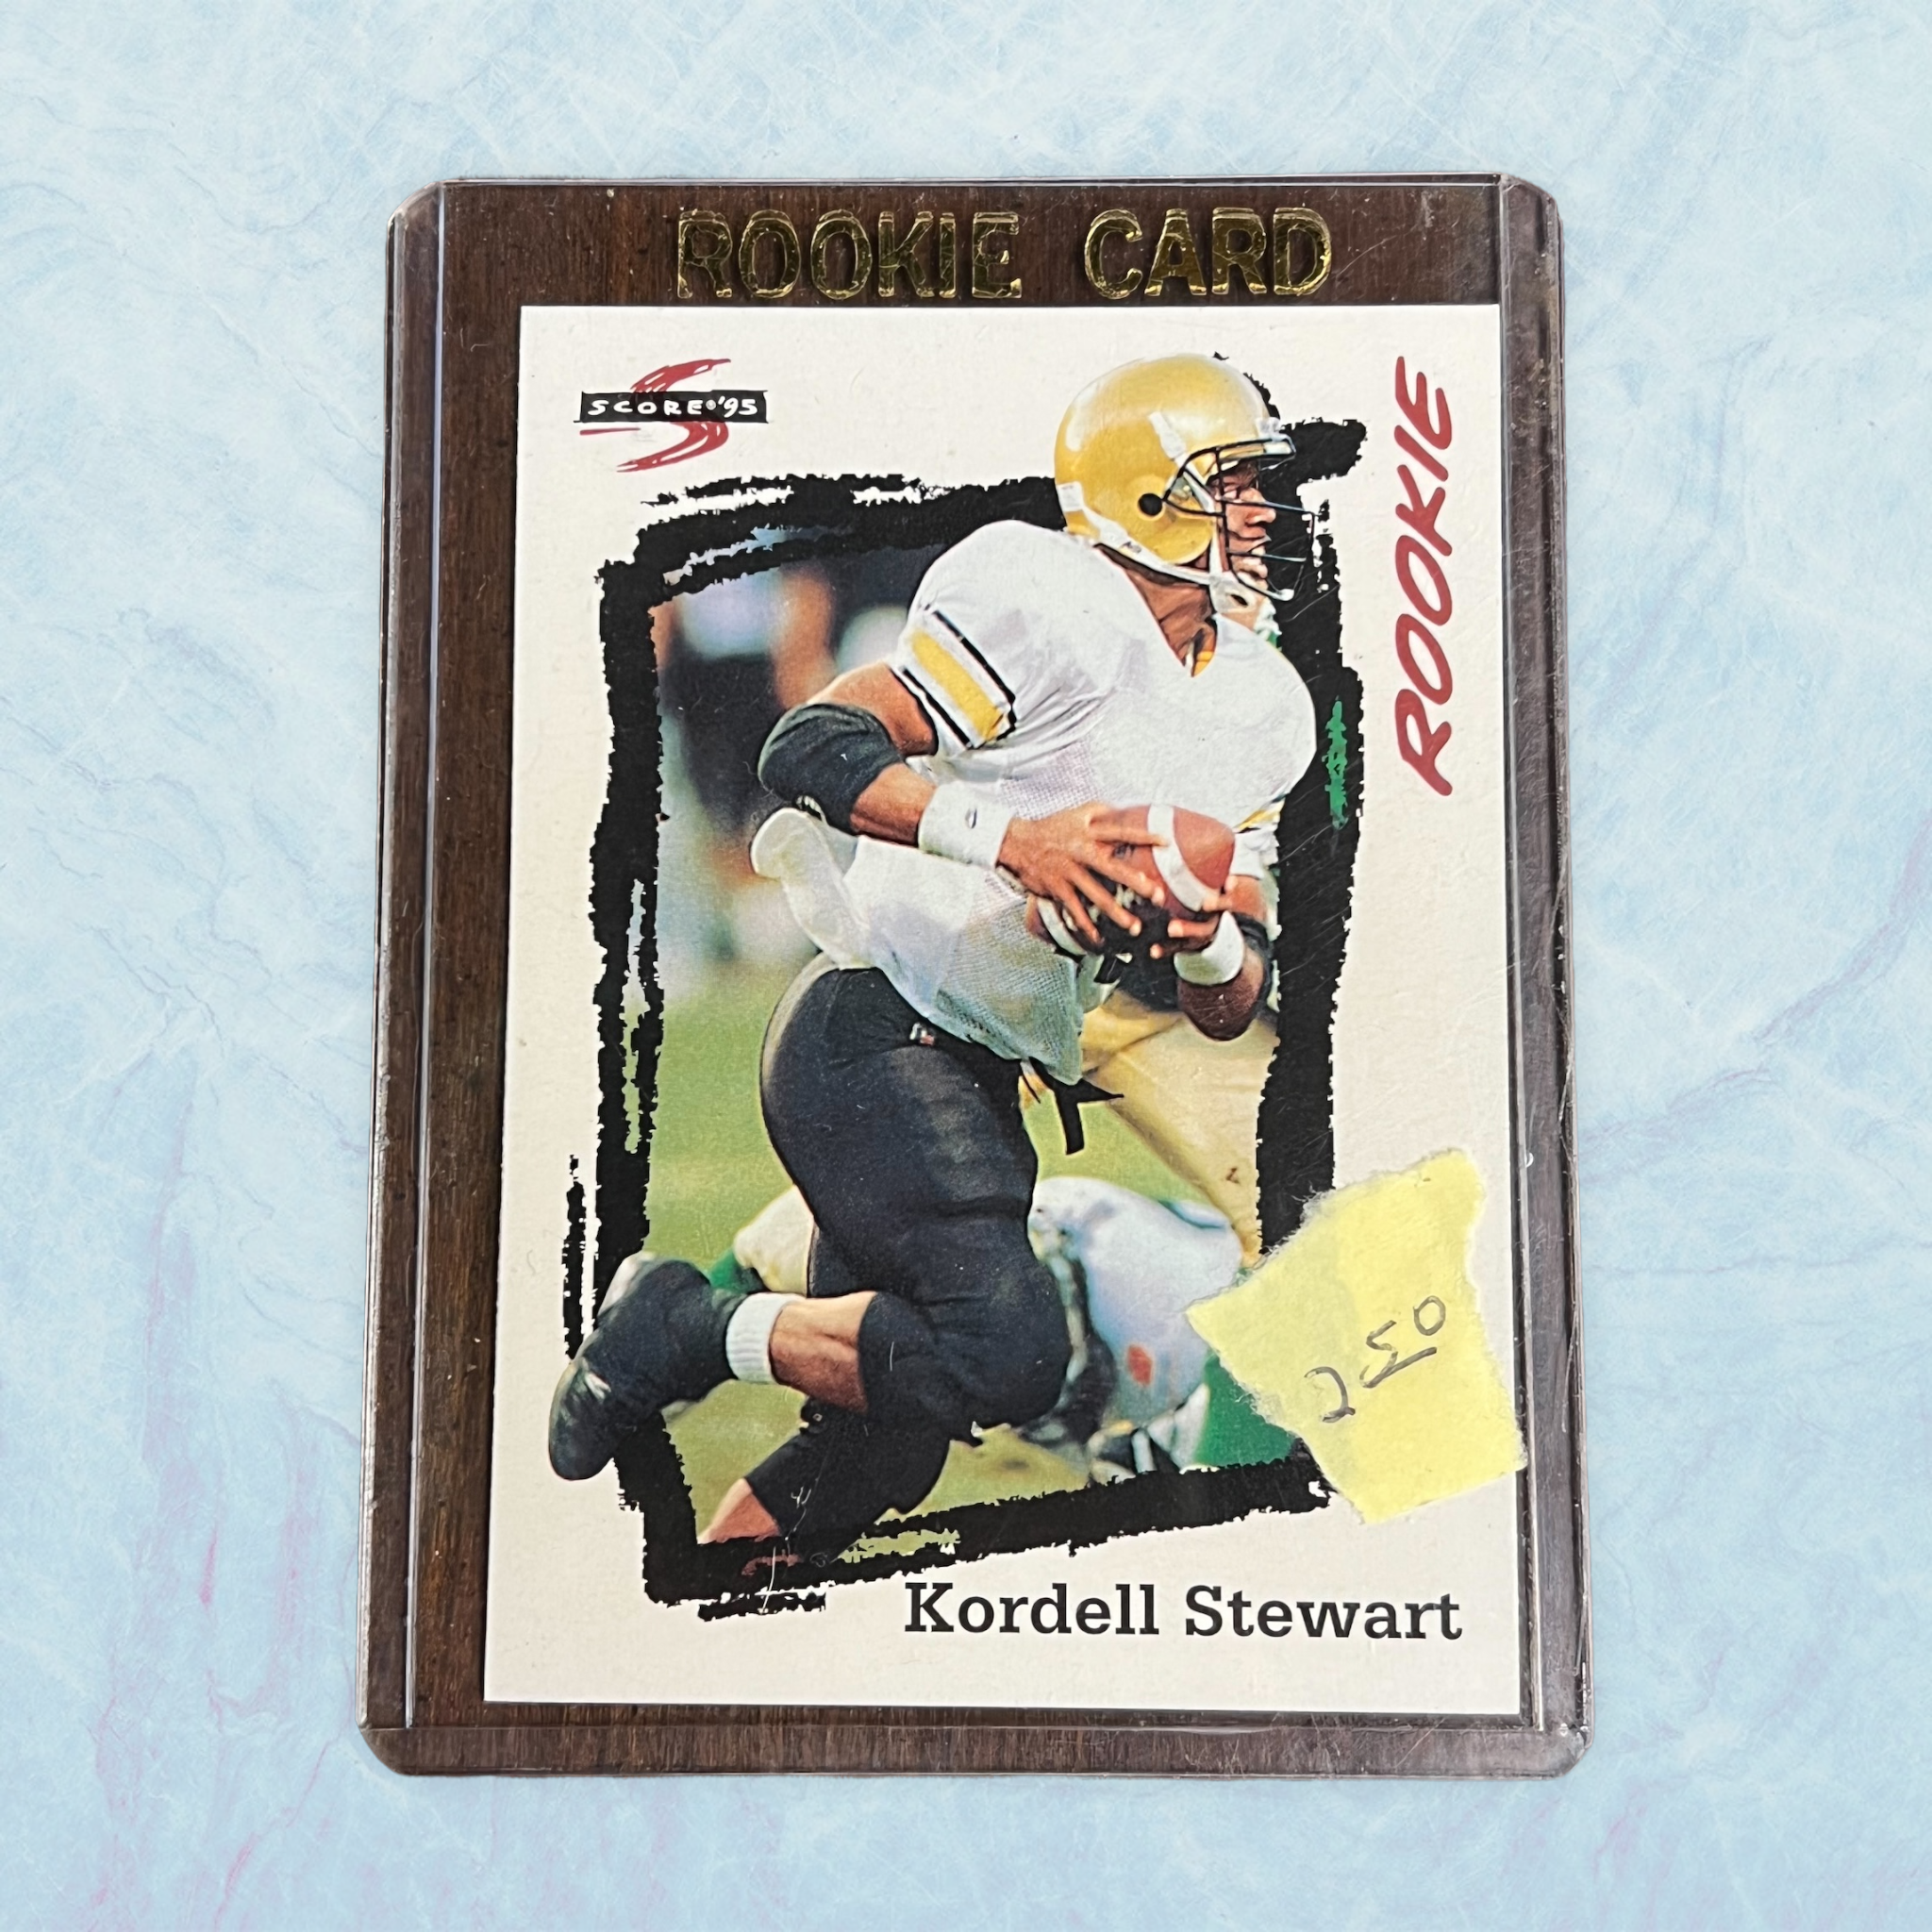 1995 Score #264 Kordell Stewart Rookie Card Pittsburgh Steelers